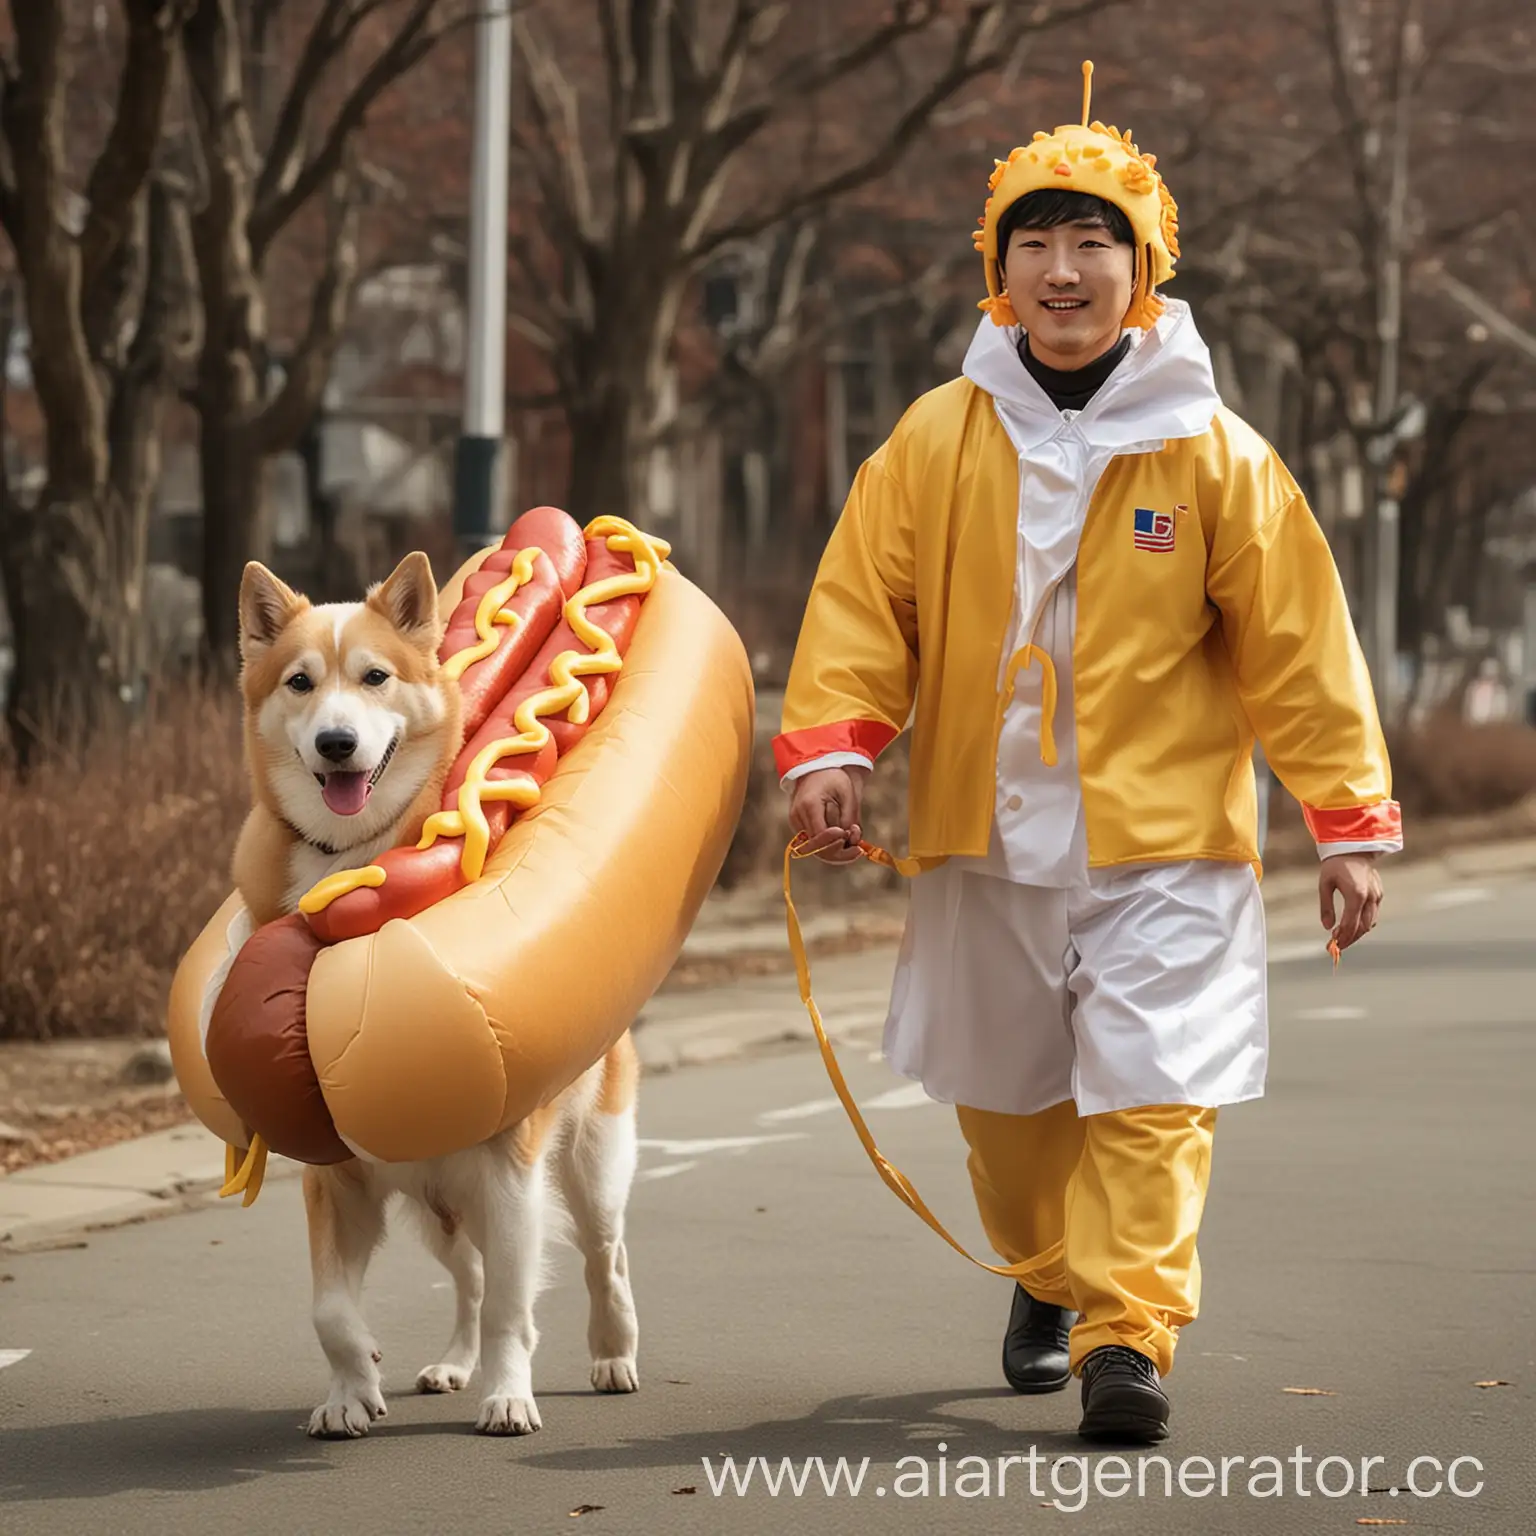 Korean-Man-in-Hot-Dog-Costume-Walking-Pet-Dog